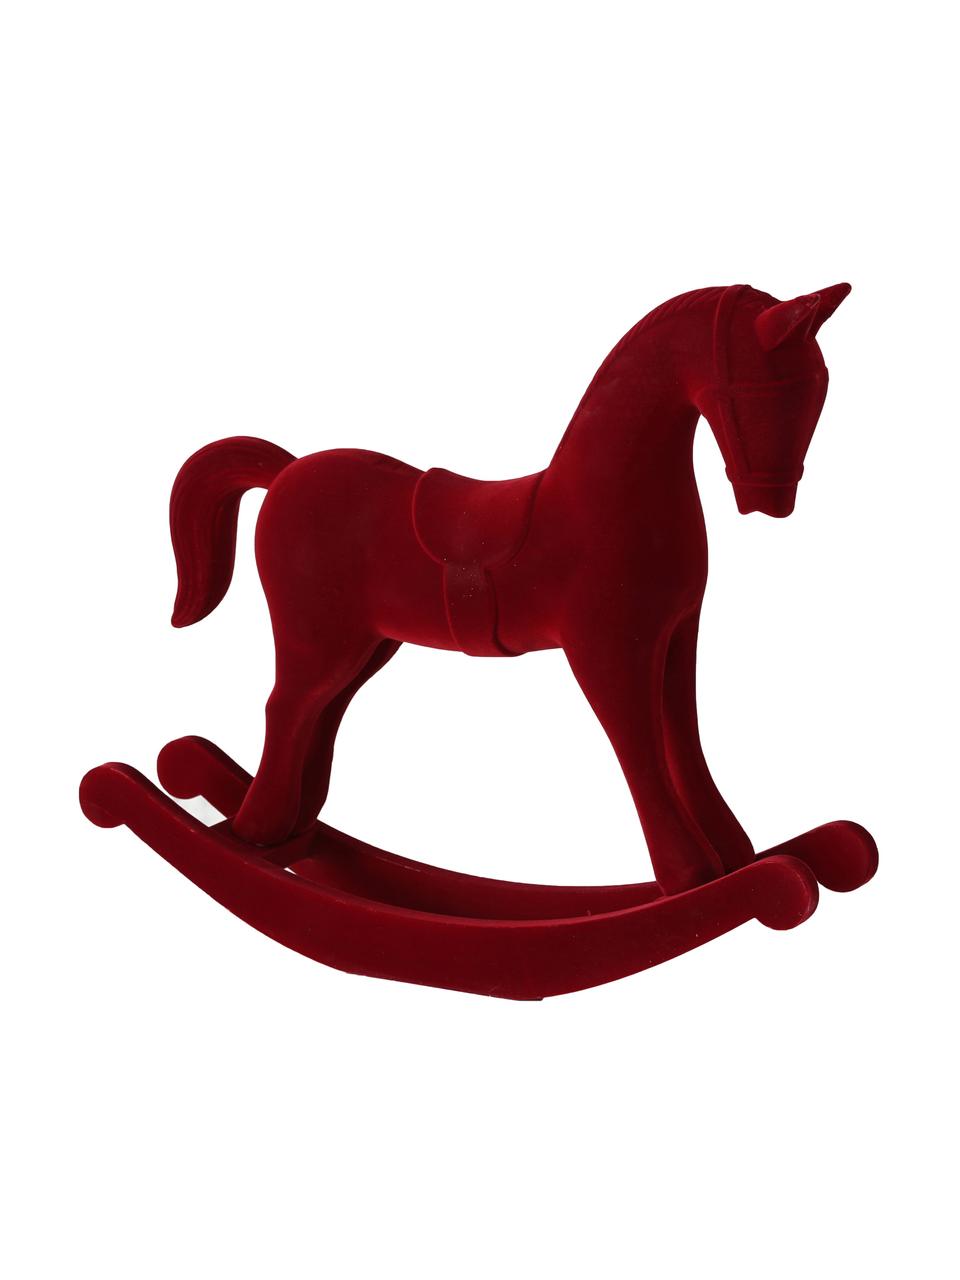 Dekoracja z aksamitu Rocking Horse, Tapicerka: aksamit, Stelaż: płyta pilśniowa średniej , Czerwony, S 38 x W 31 cm